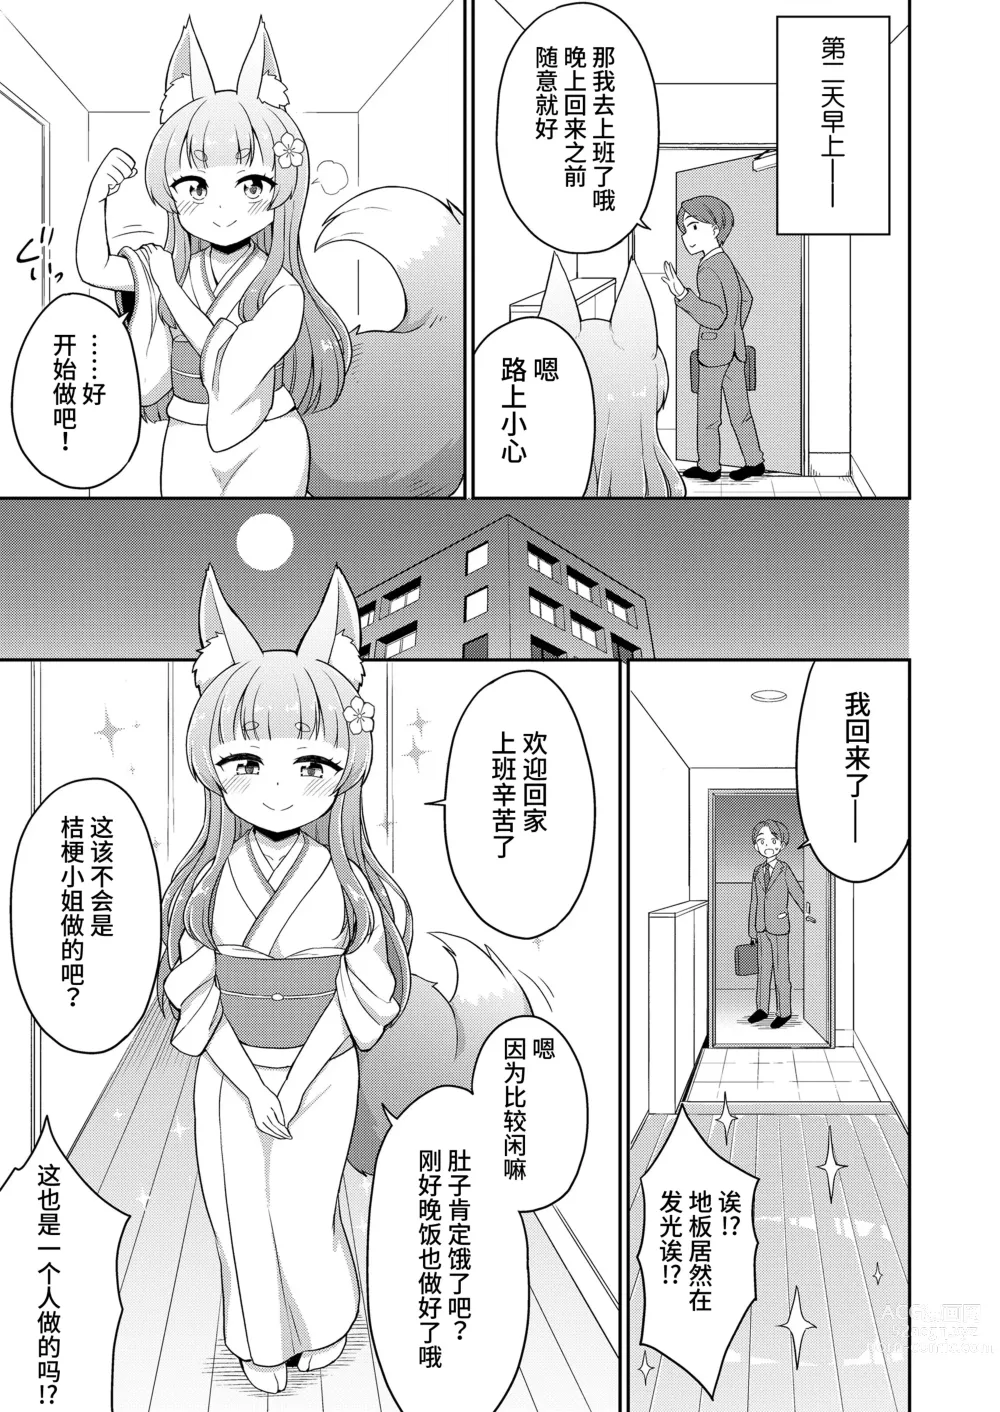 Page 7 of manga 婚活 1-2